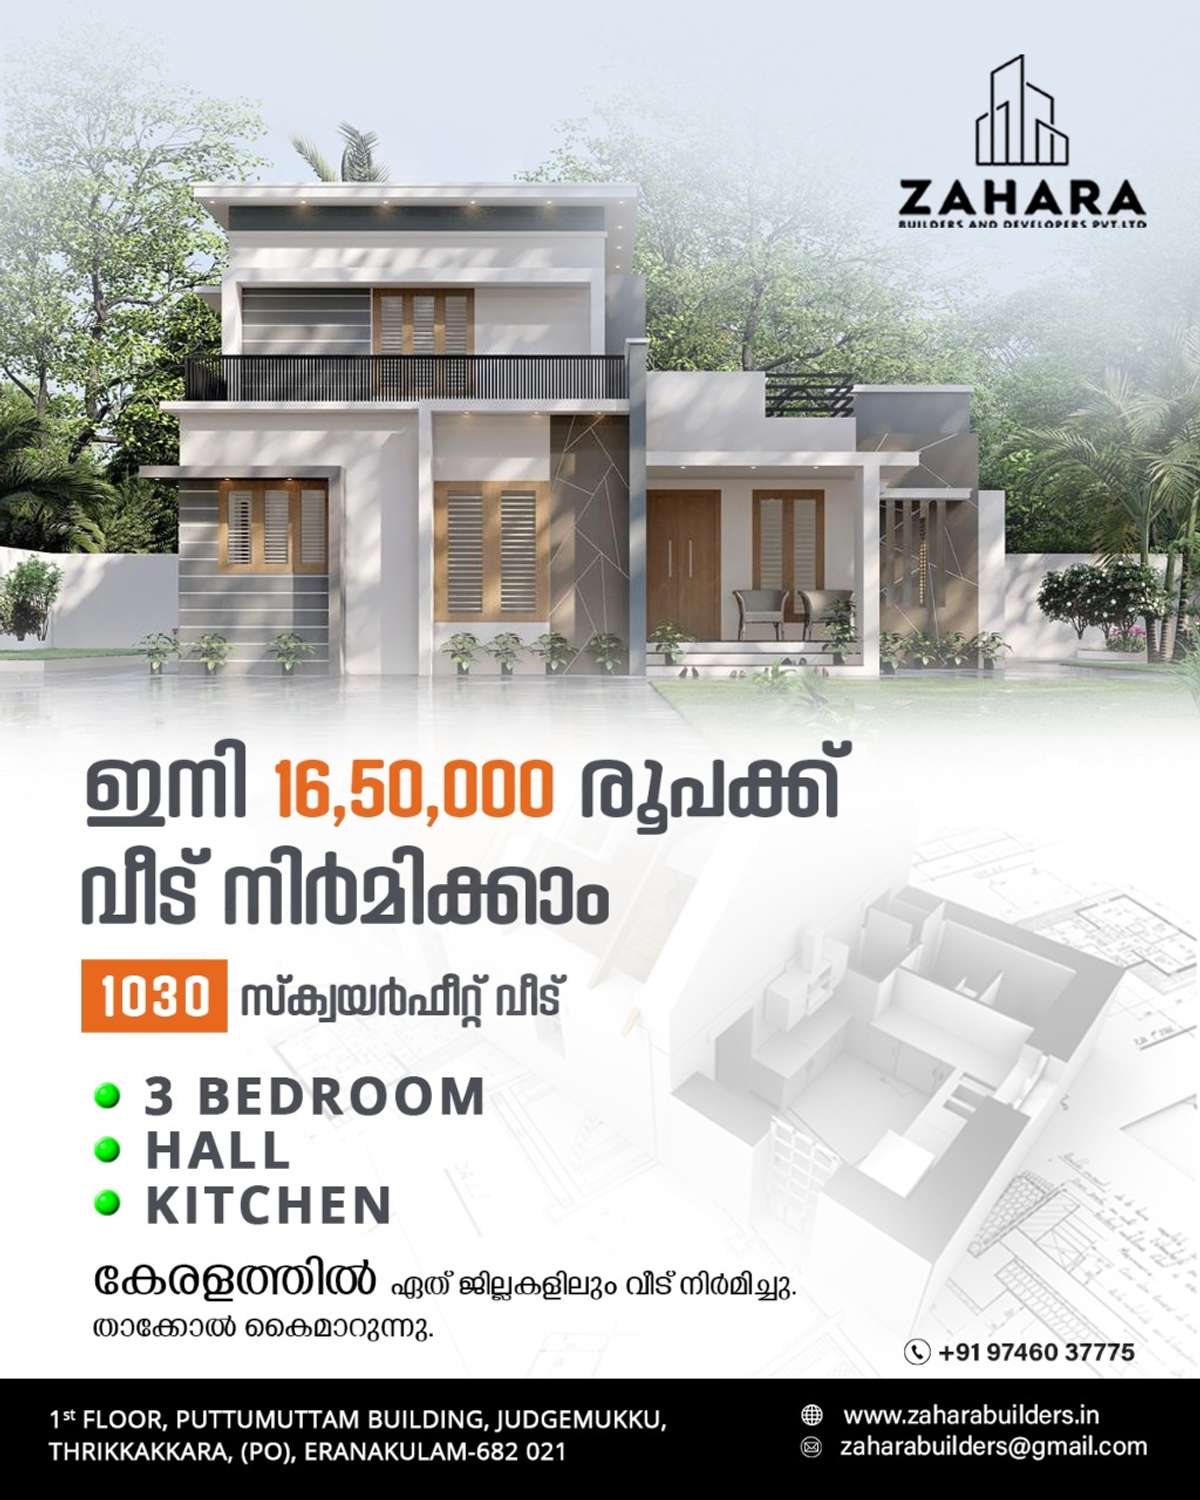 Designs by Civil Engineer Zahara Builders, Ernakulam | Kolo